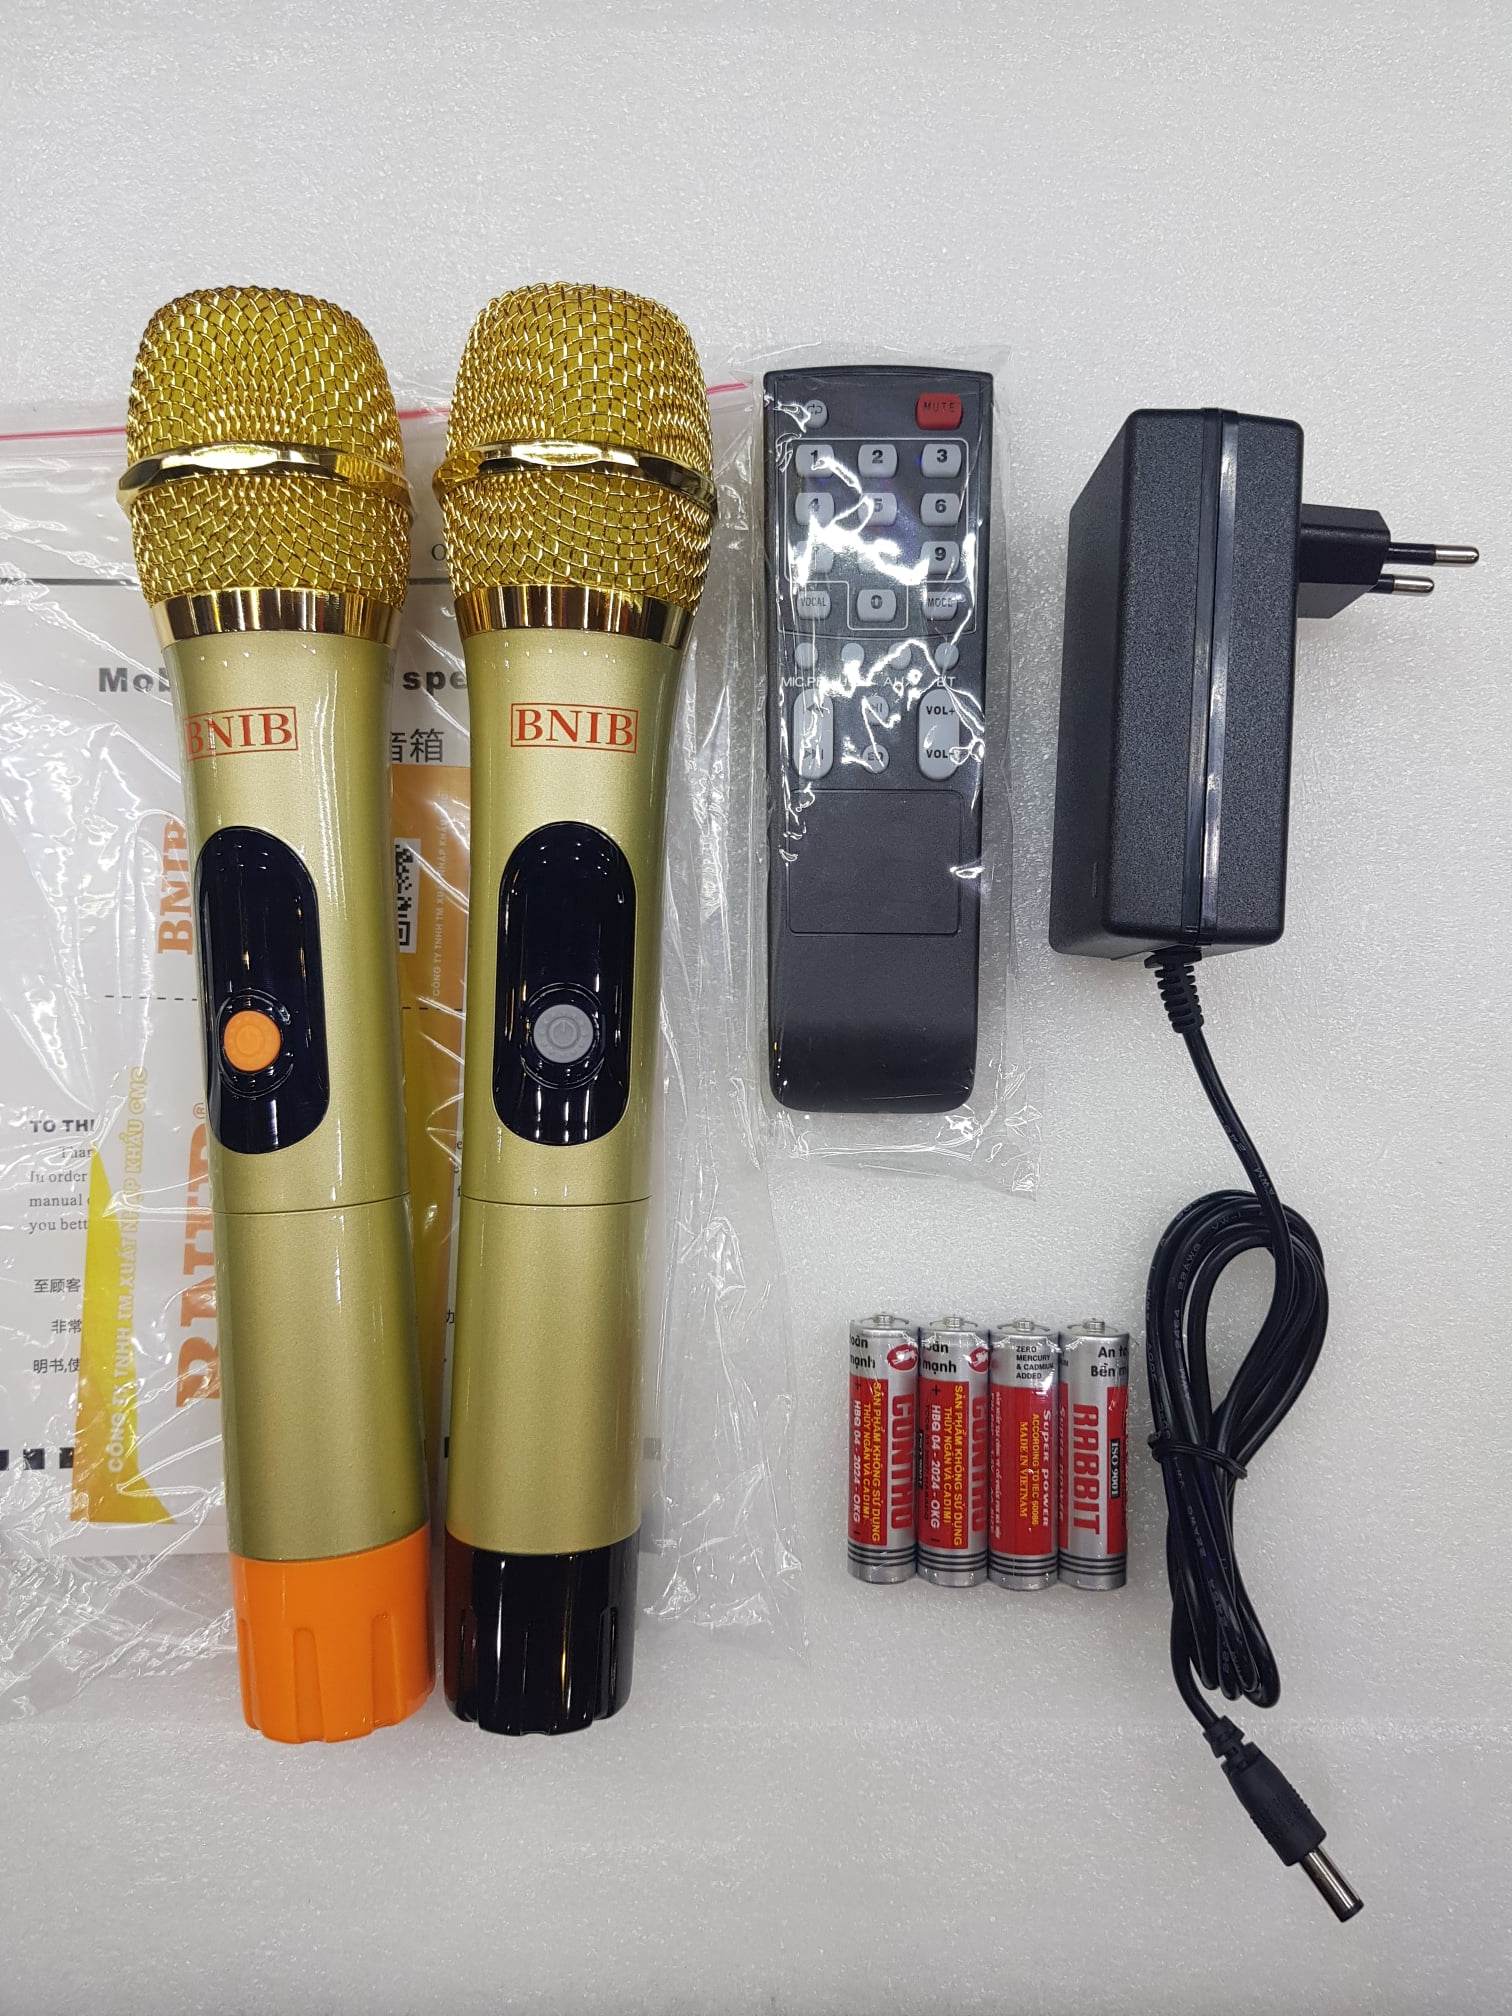 Loa xách tay Karaoke Bluetooth BNIB BN-116: Bass 16, 3 loa, Vỏ da bọc gỗ, Âm thanh chất lượng, Kèm 2 Micro vỏ kim loại